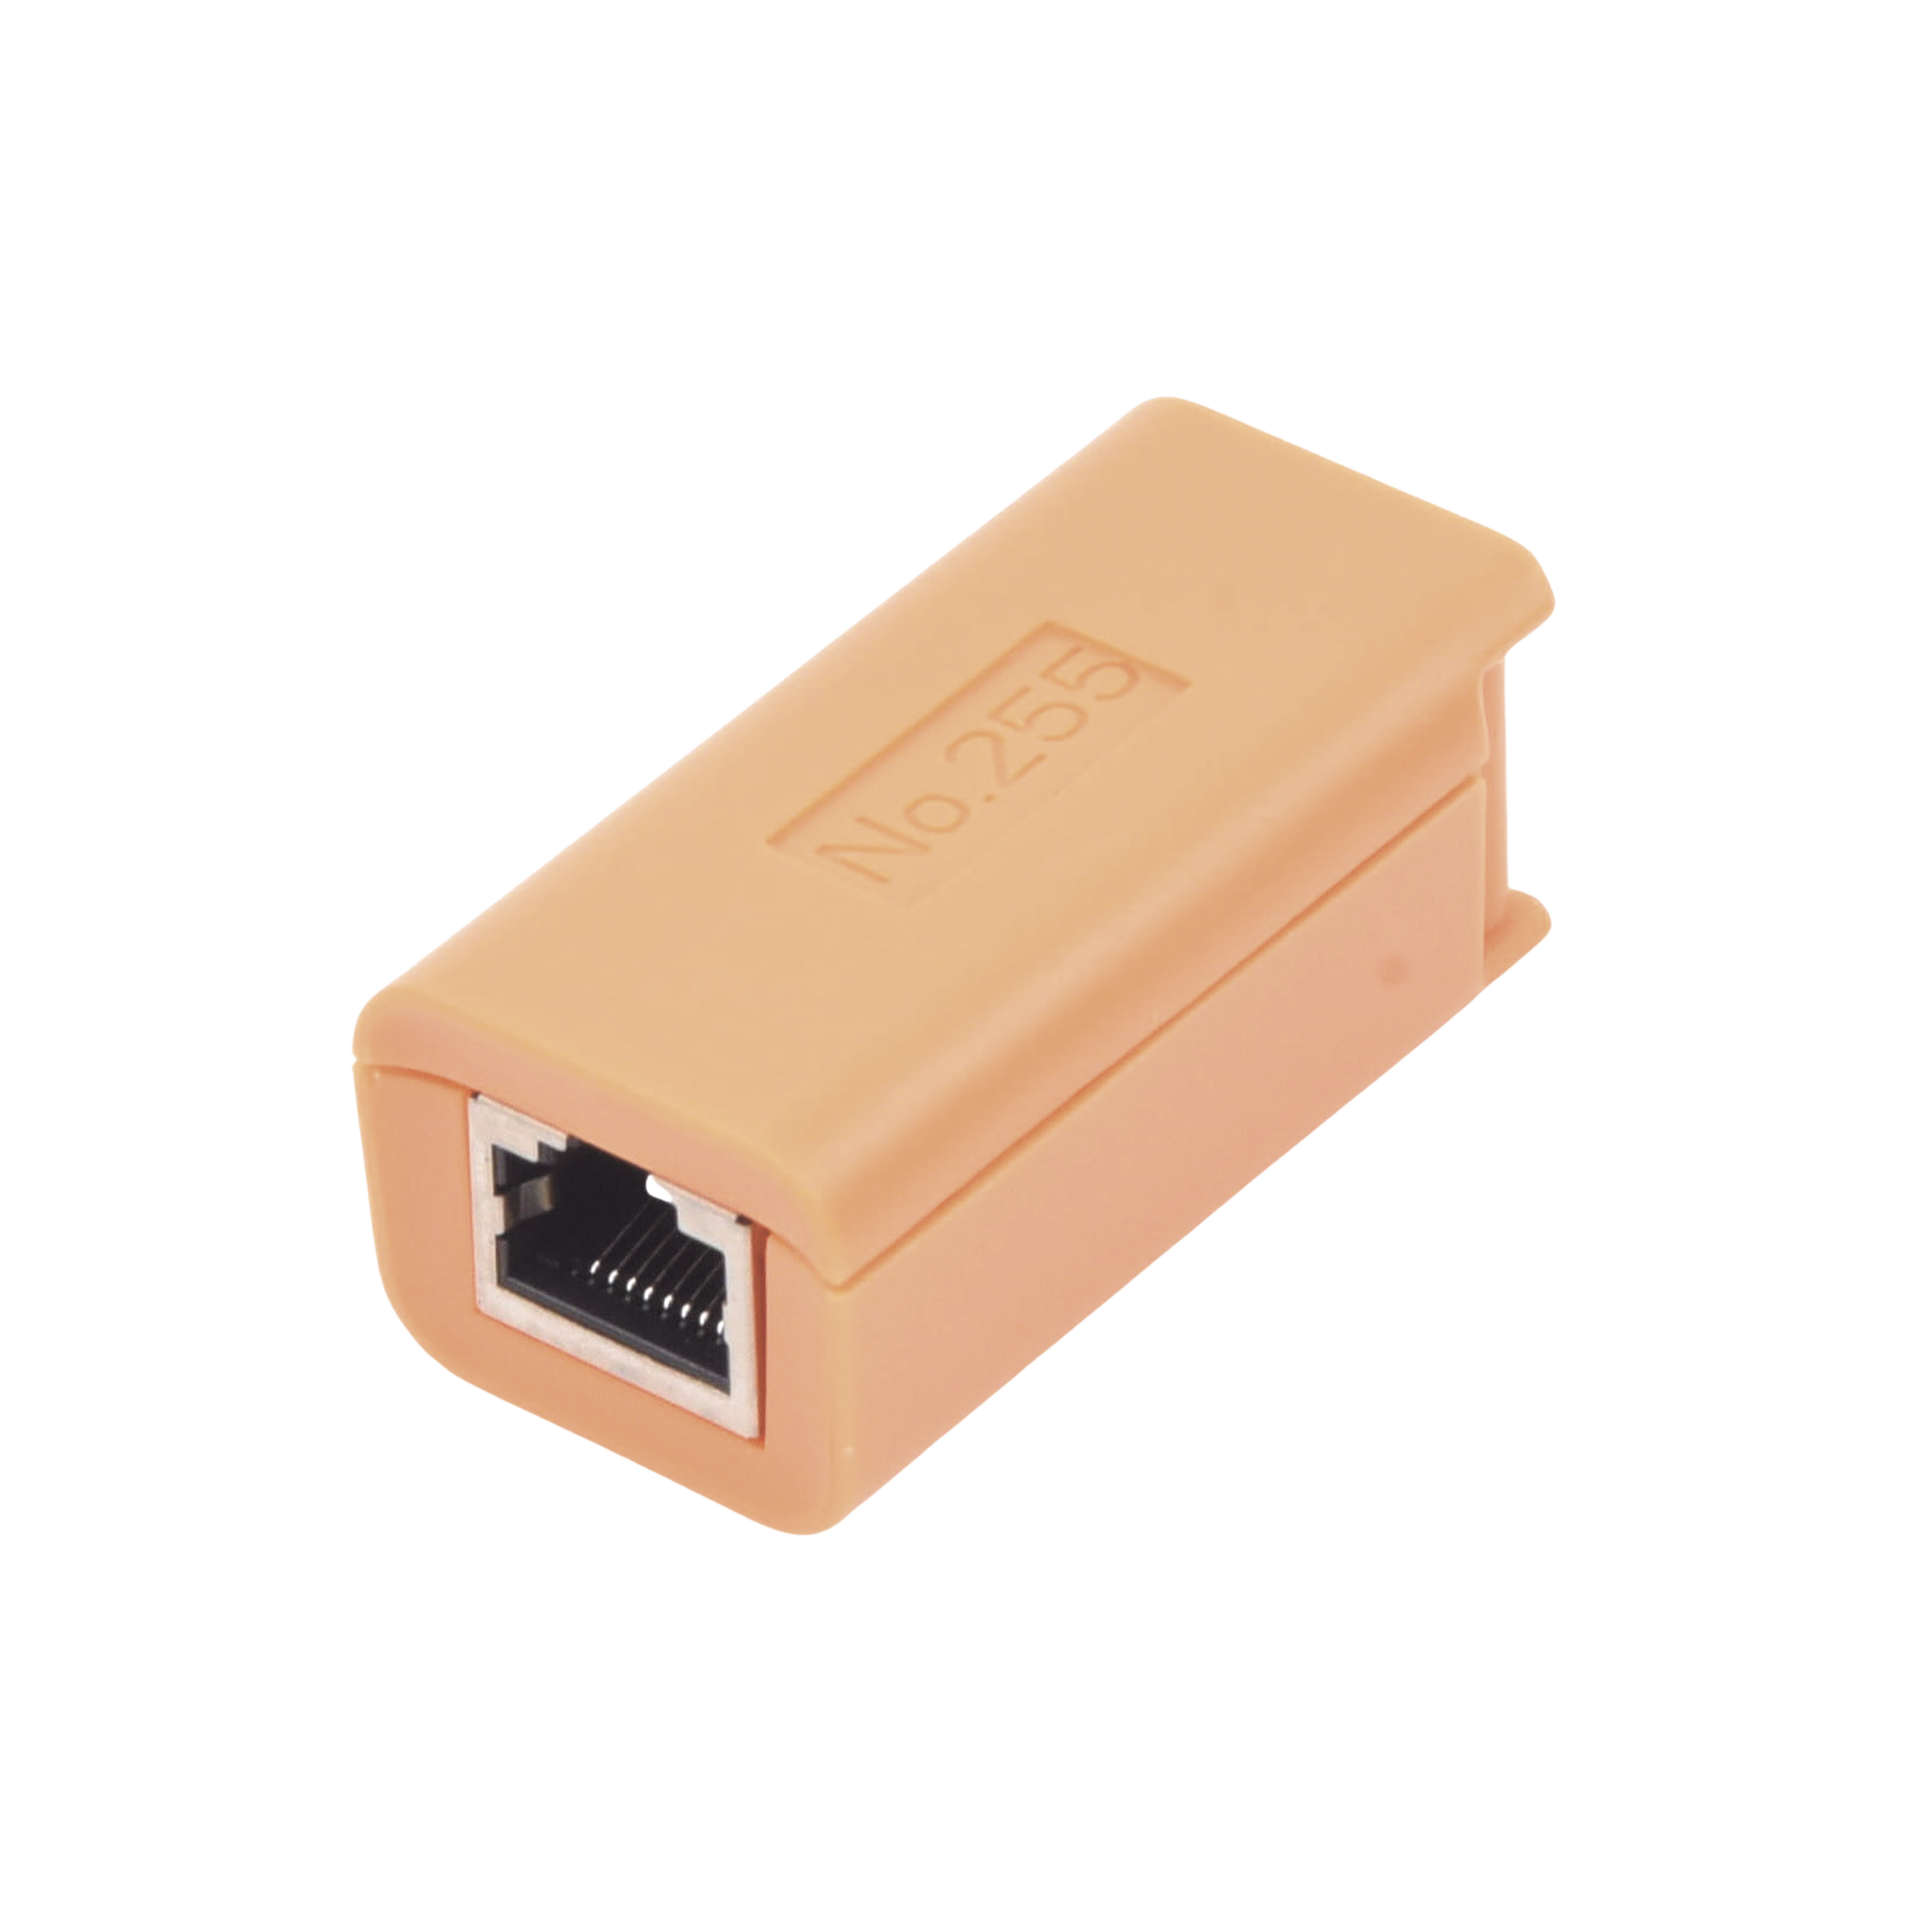 Receptor LAN para Prueba de Cable de Red, Compatible con Probadores de Video TPTURBO8MP / TPTURBO4KPLUS / EPMONTVI4K / EPMONTVI / EPMONTVI3.0 / TPTURBOHD / TPTURBO5MP / TPTURBO4K